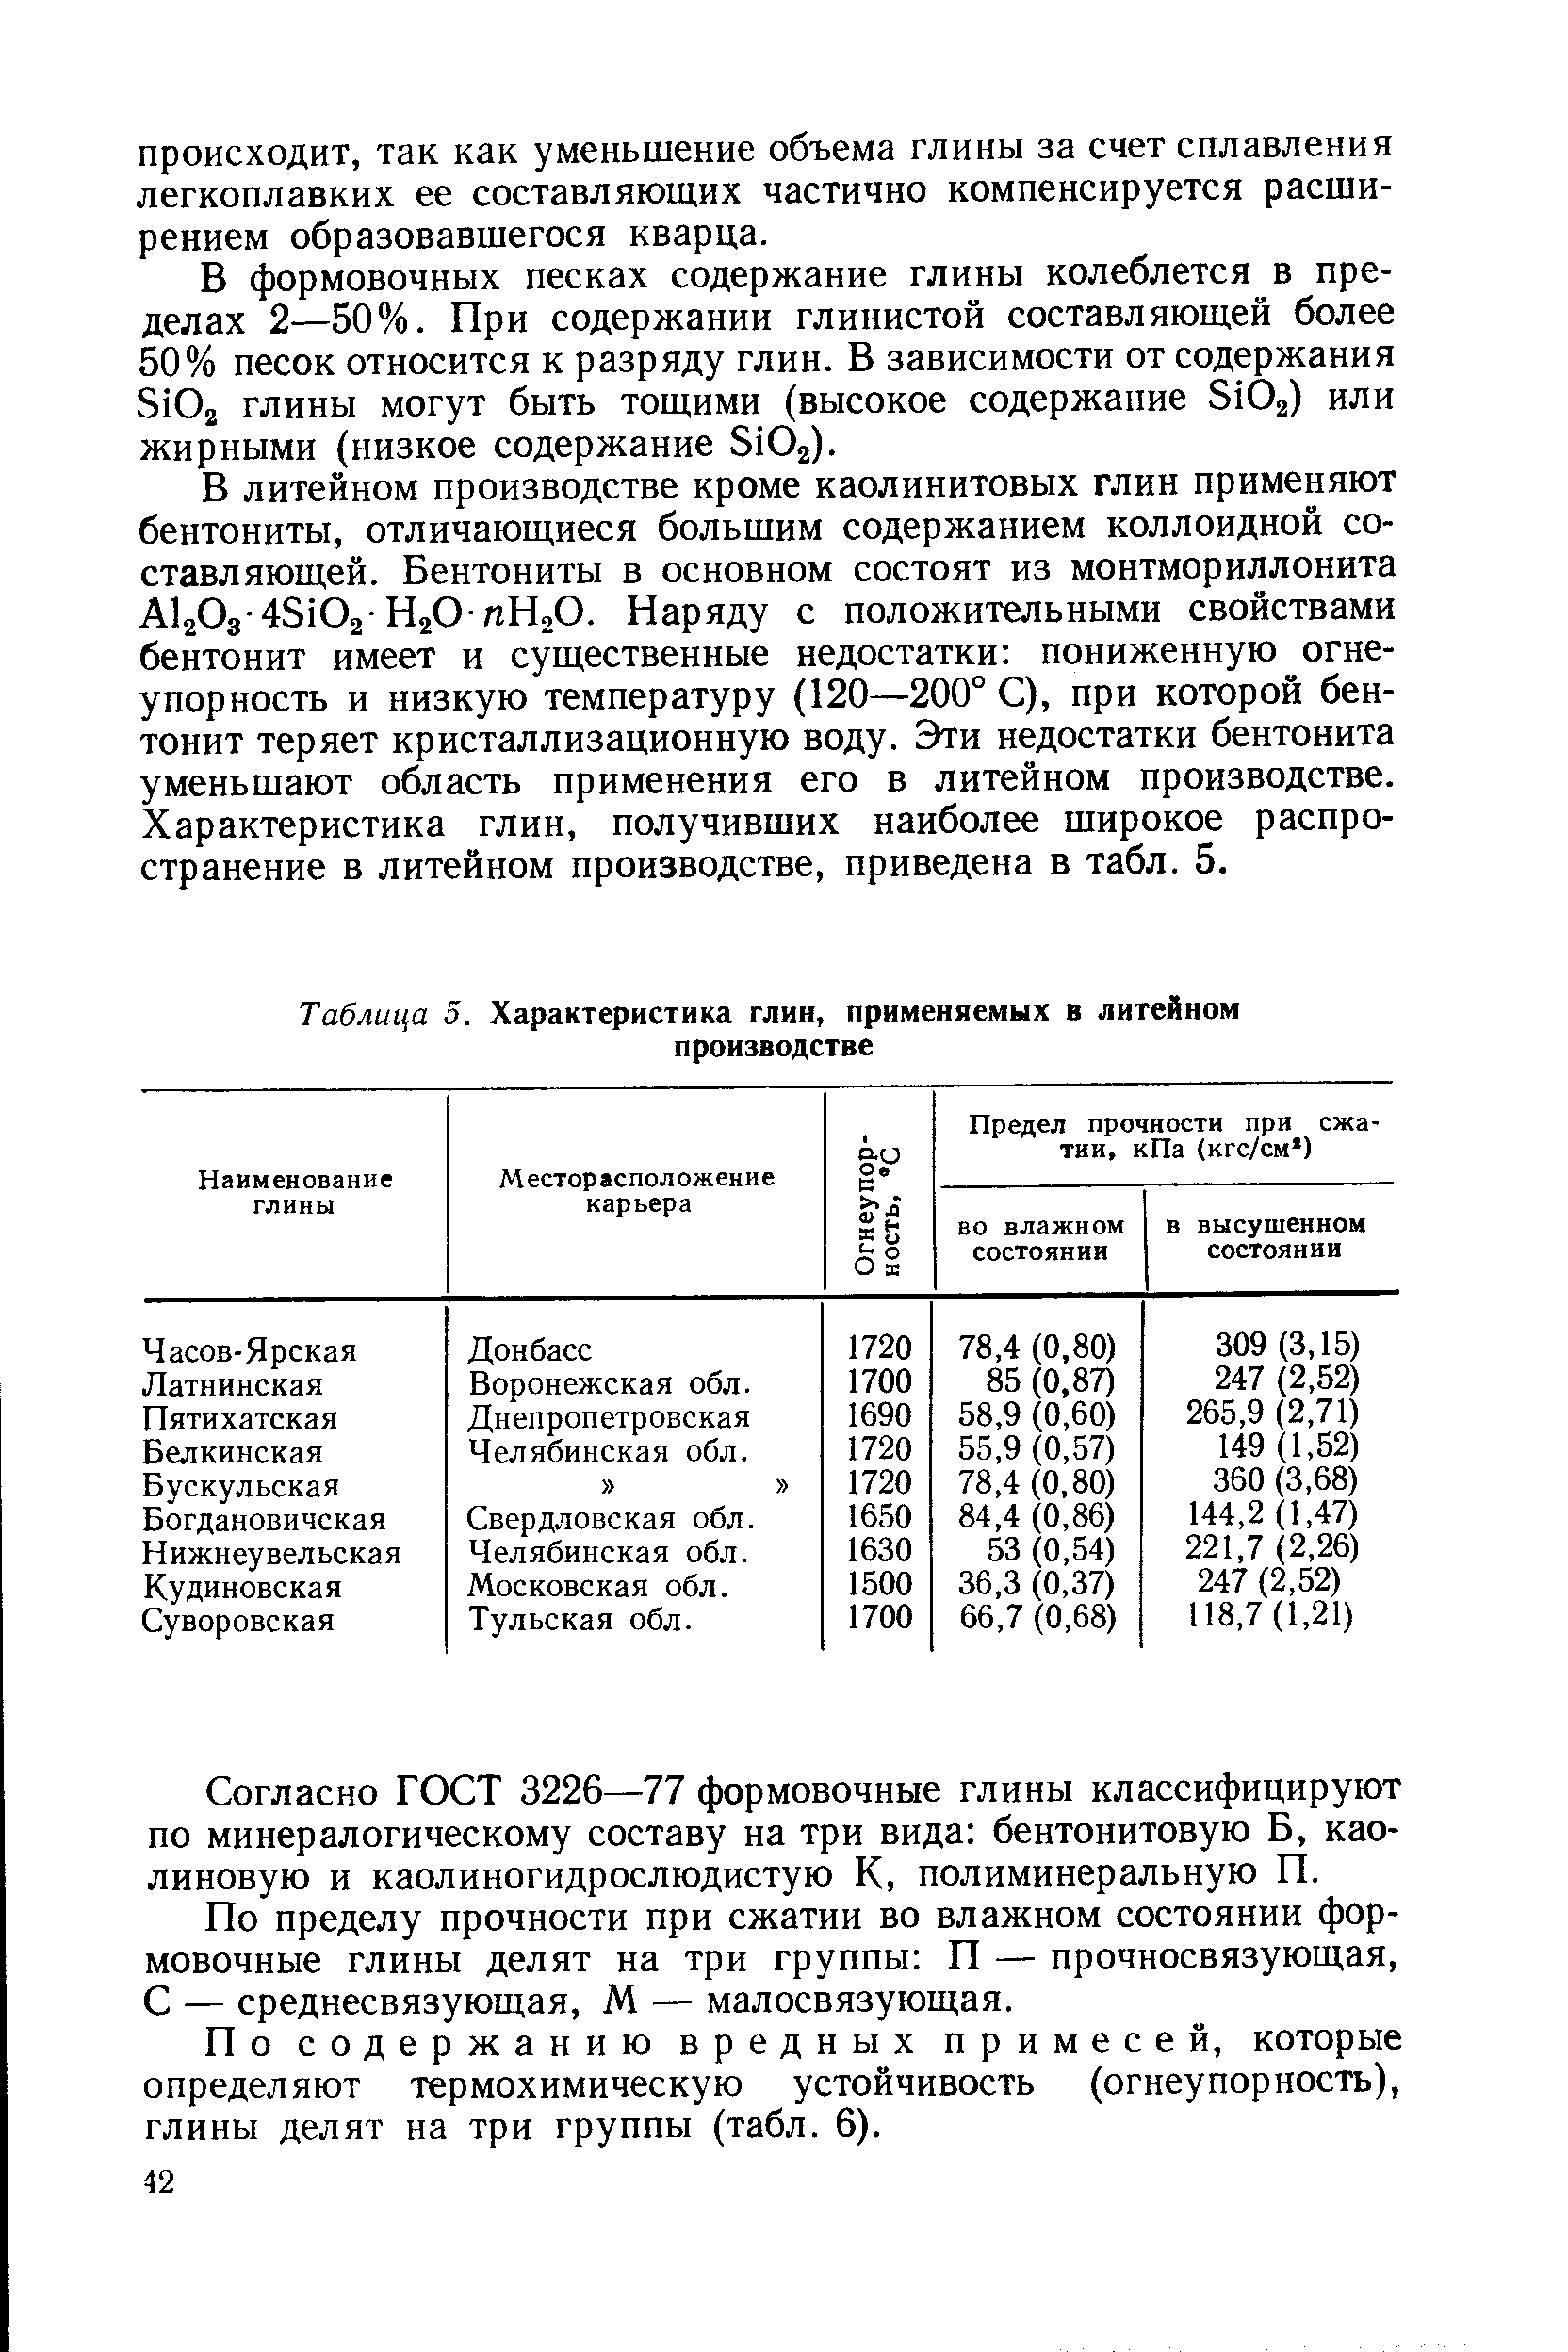 Таблица 5. Характеристика глин применяемых в литейном производстве
